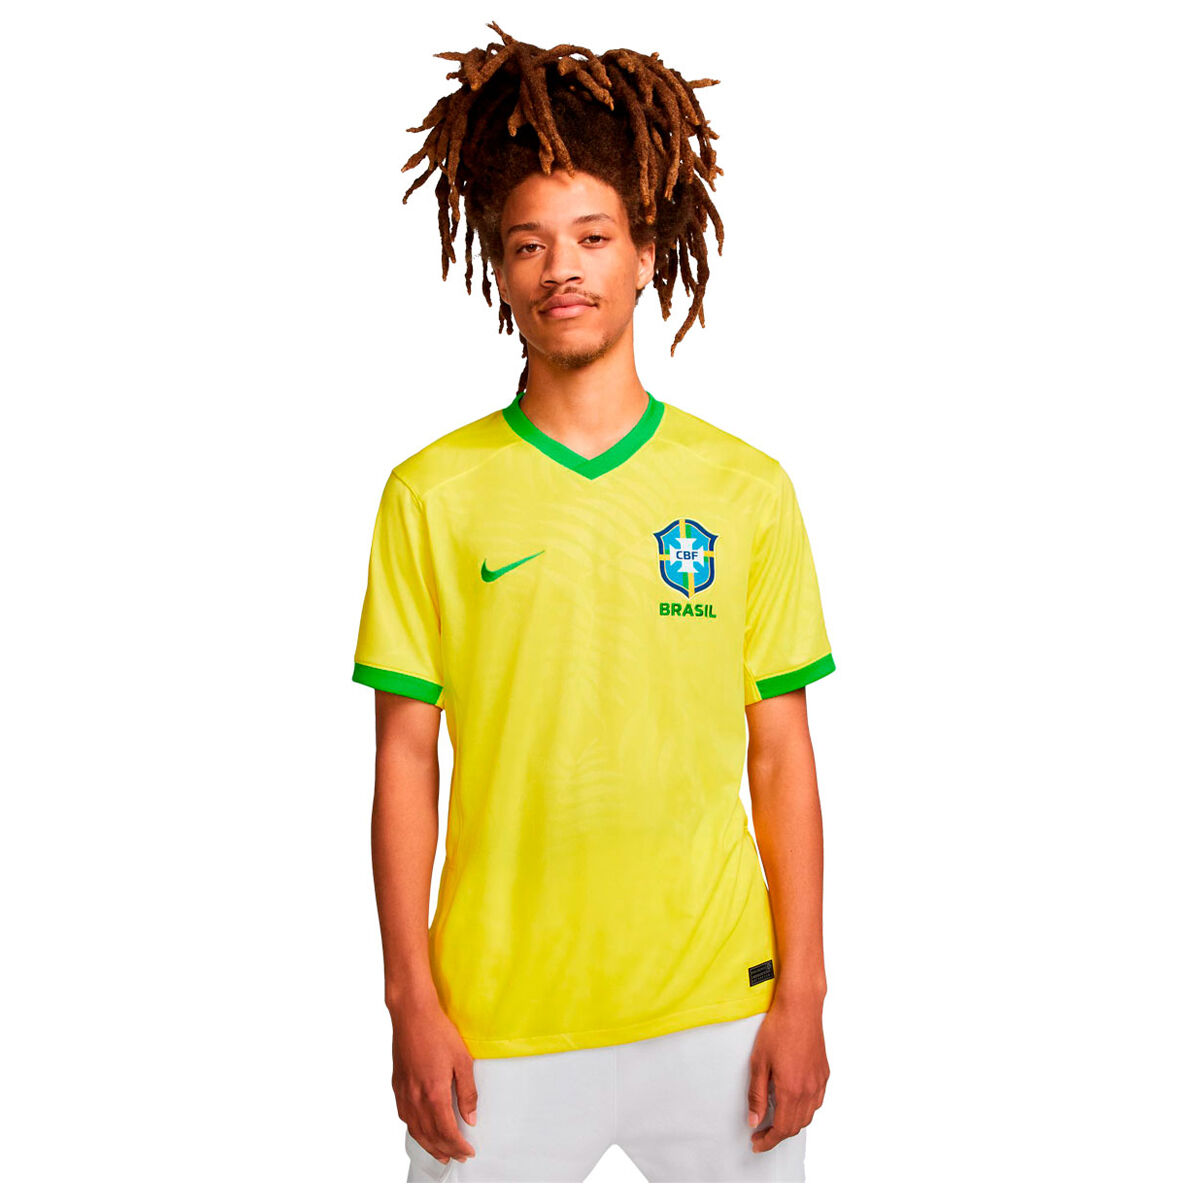 Brazil National Football Team Jerseys & Teamwear